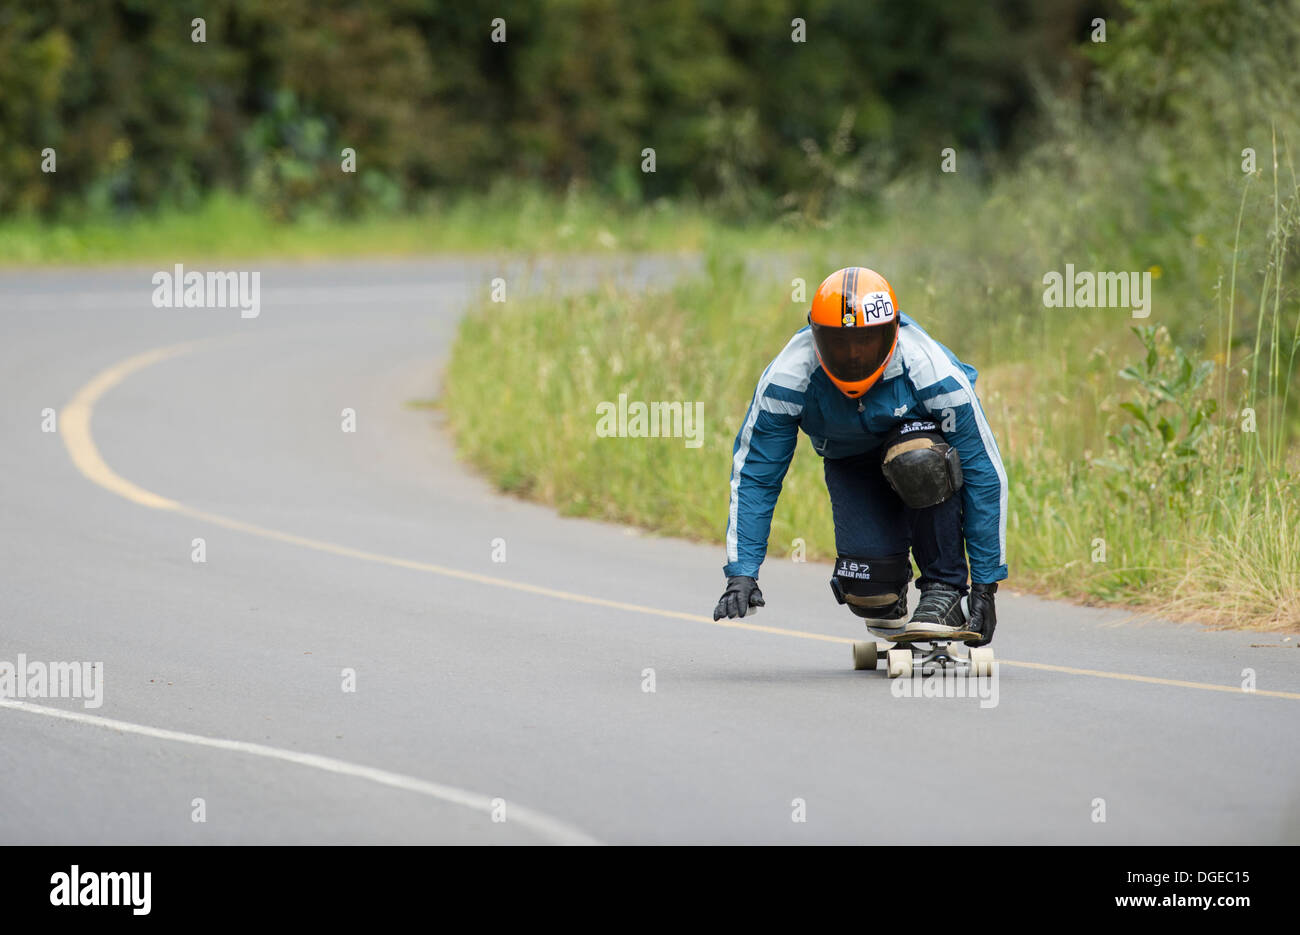 Jeune homme longboard skateboard descente formation sur la voie publique Banque D'Images